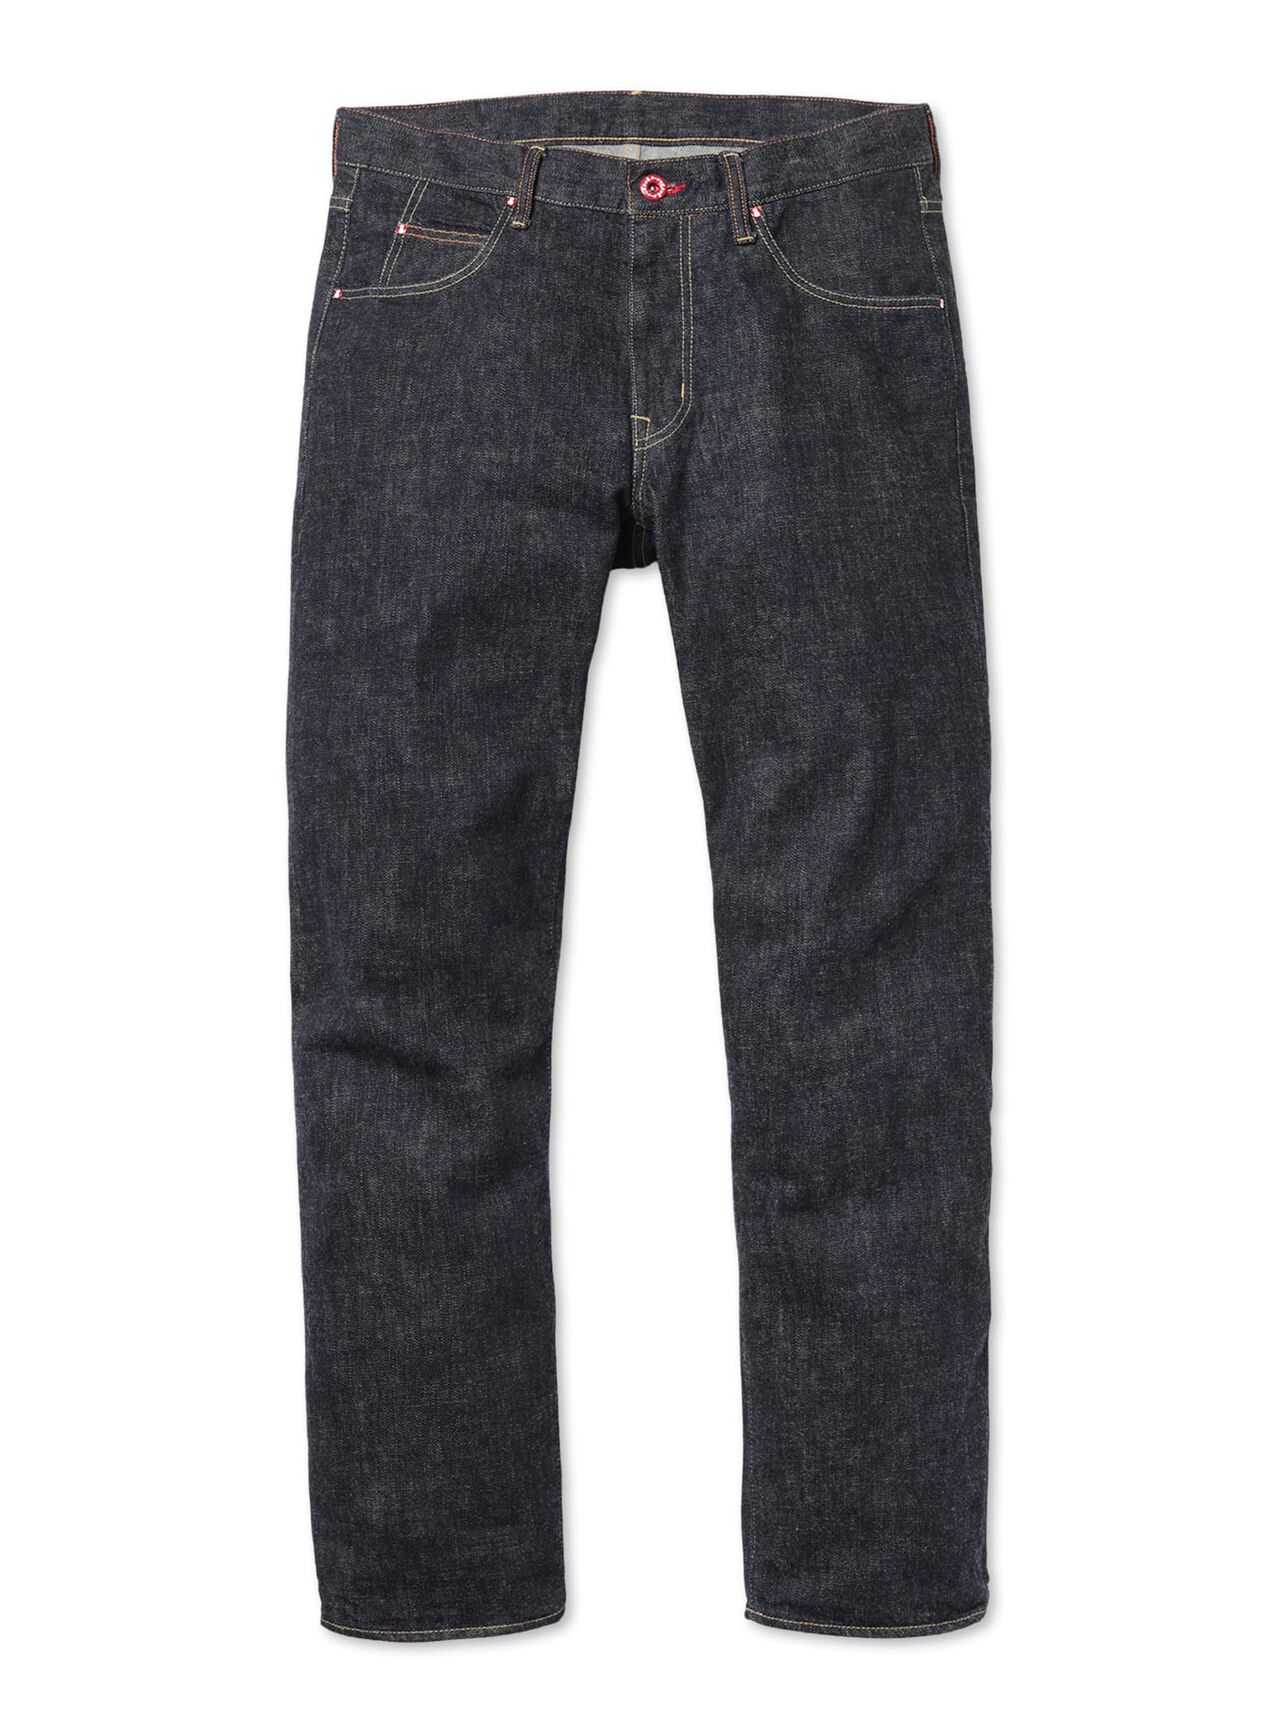 Jeans - Regular 22 - Reverse U5,, large image number 0